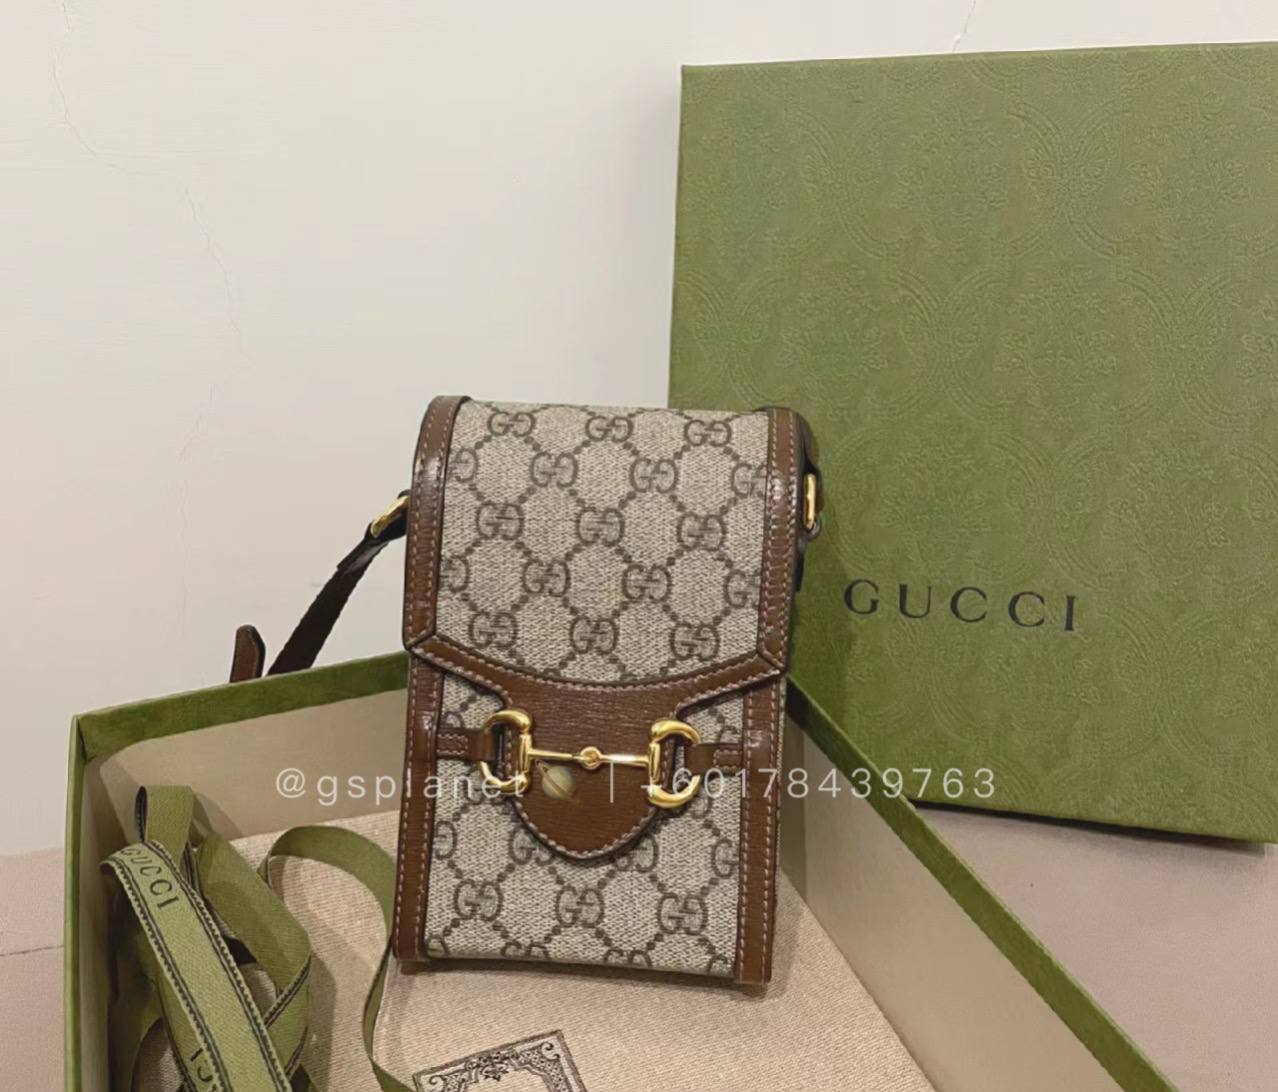 gucci women's small bag